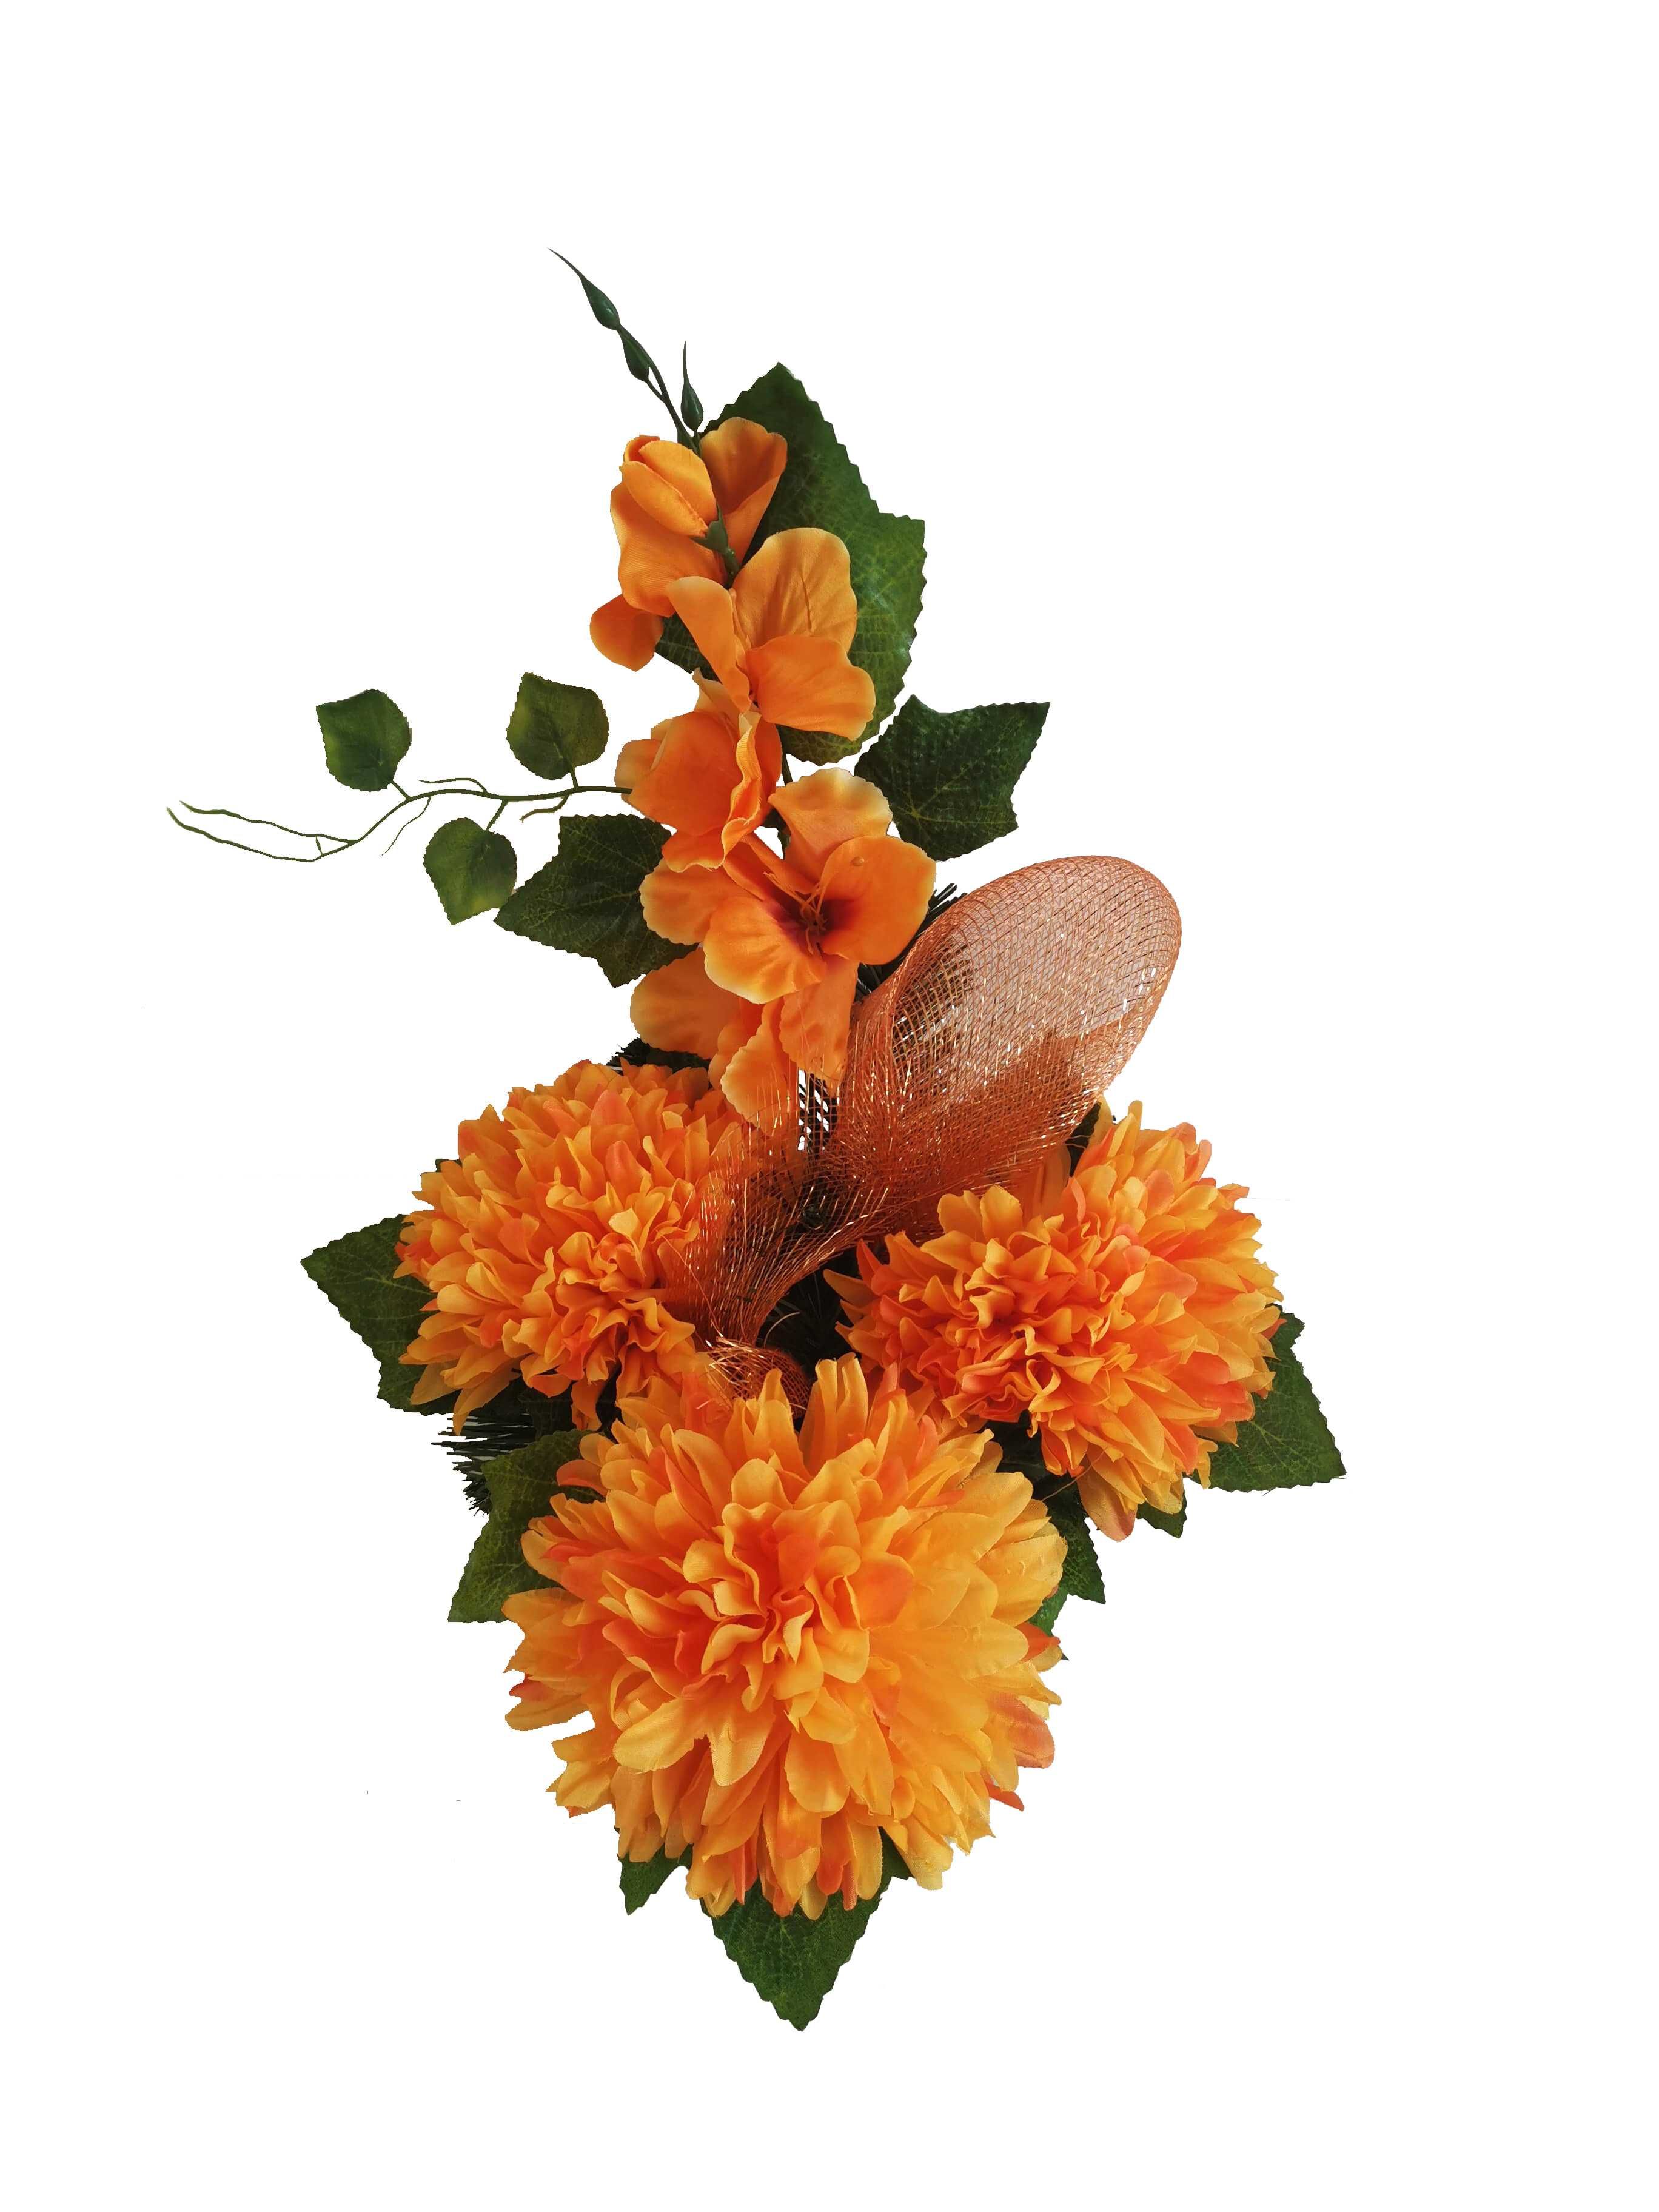 Stroik grób cmentarz kwiaty wiązanka chryzantema Pomarańcz